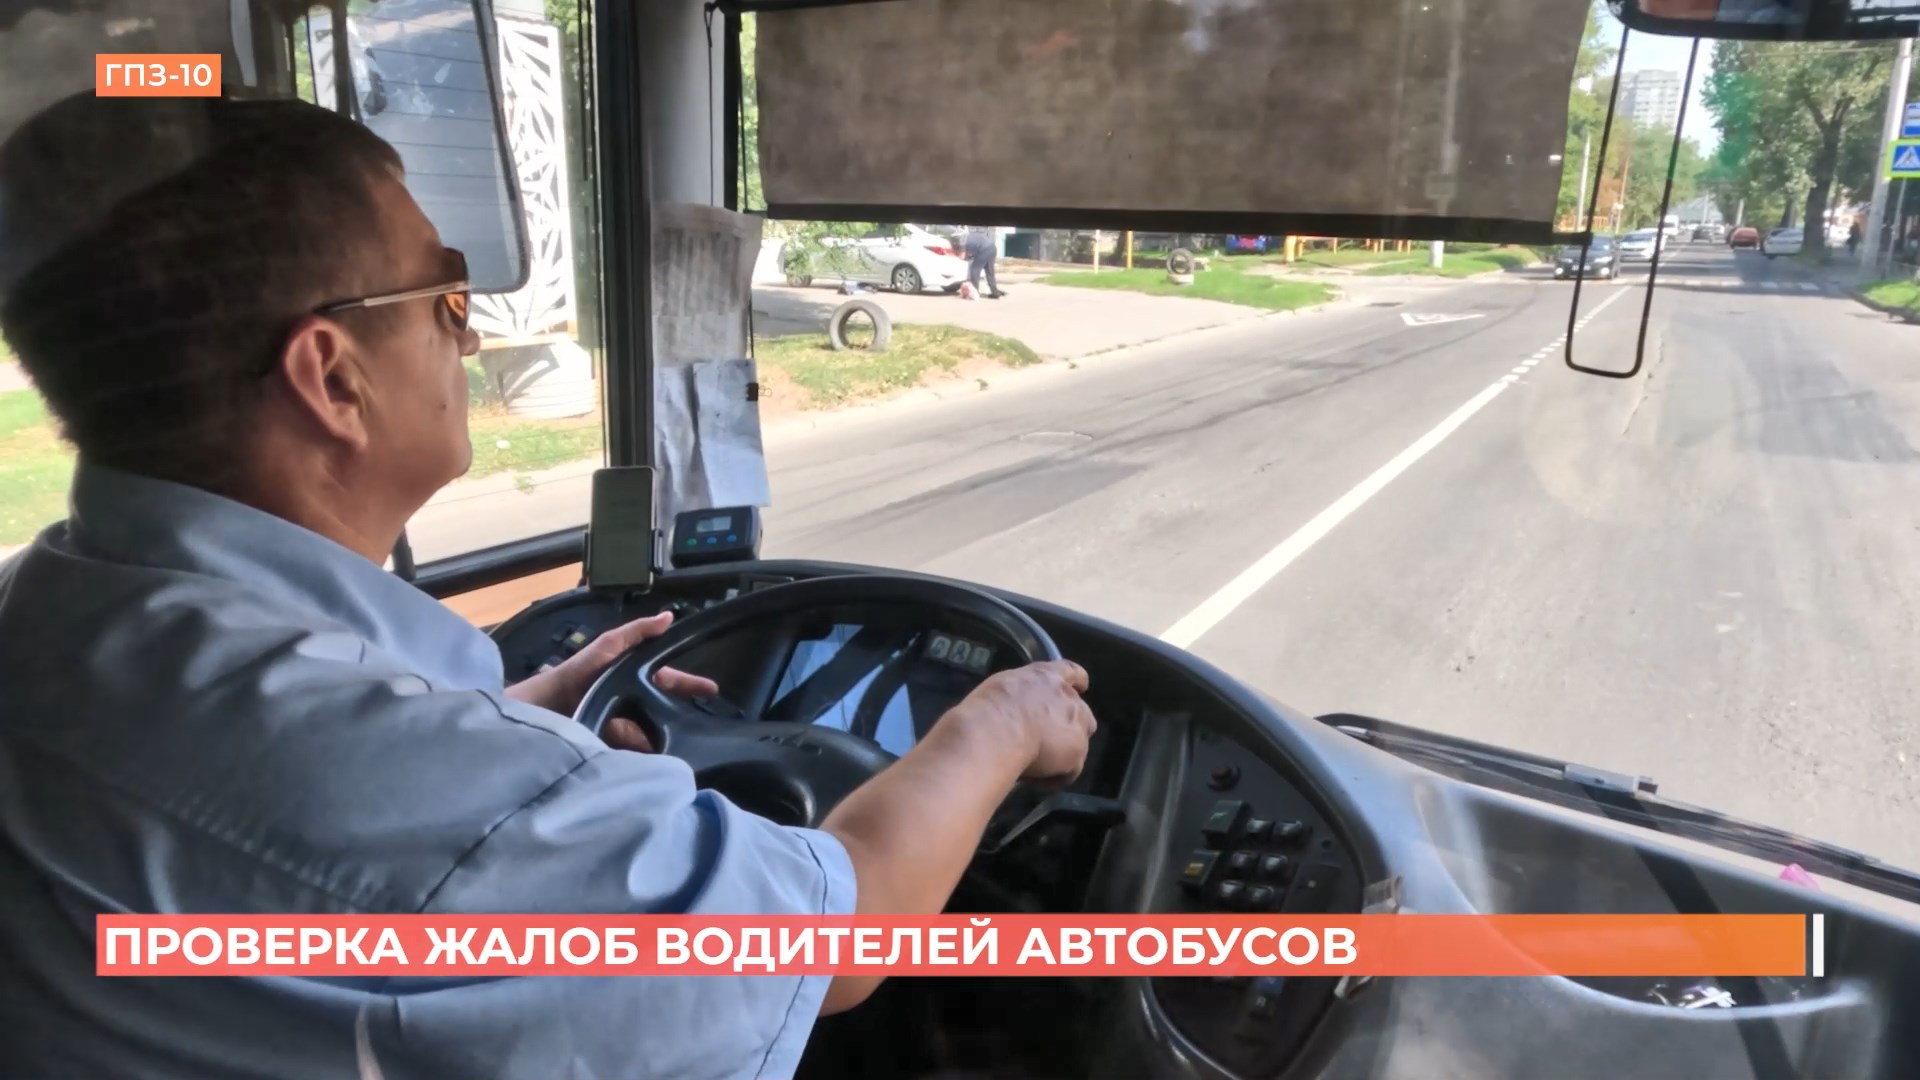 Жалобы водителей автобусов на условия труда проверили представители городской администрации